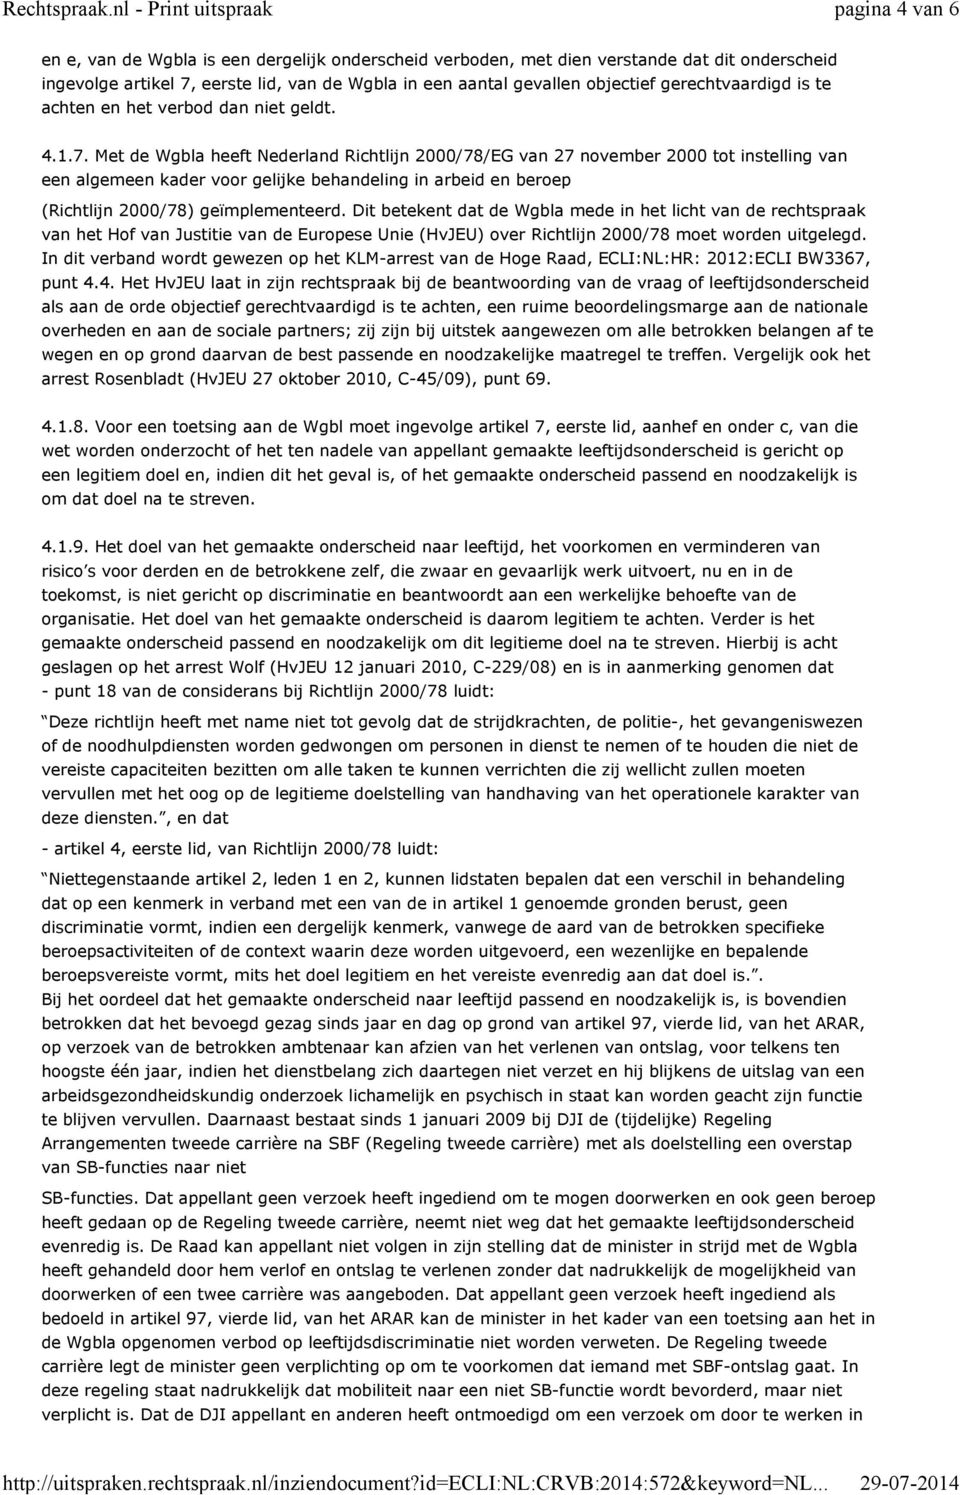 Met de Wgbla heeft Nederland Richtlijn 2000/78/EG van 27 november 2000 tot instelling van een algemeen kader voor gelijke behandeling in arbeid en beroep (Richtlijn 2000/78) geïmplementeerd.